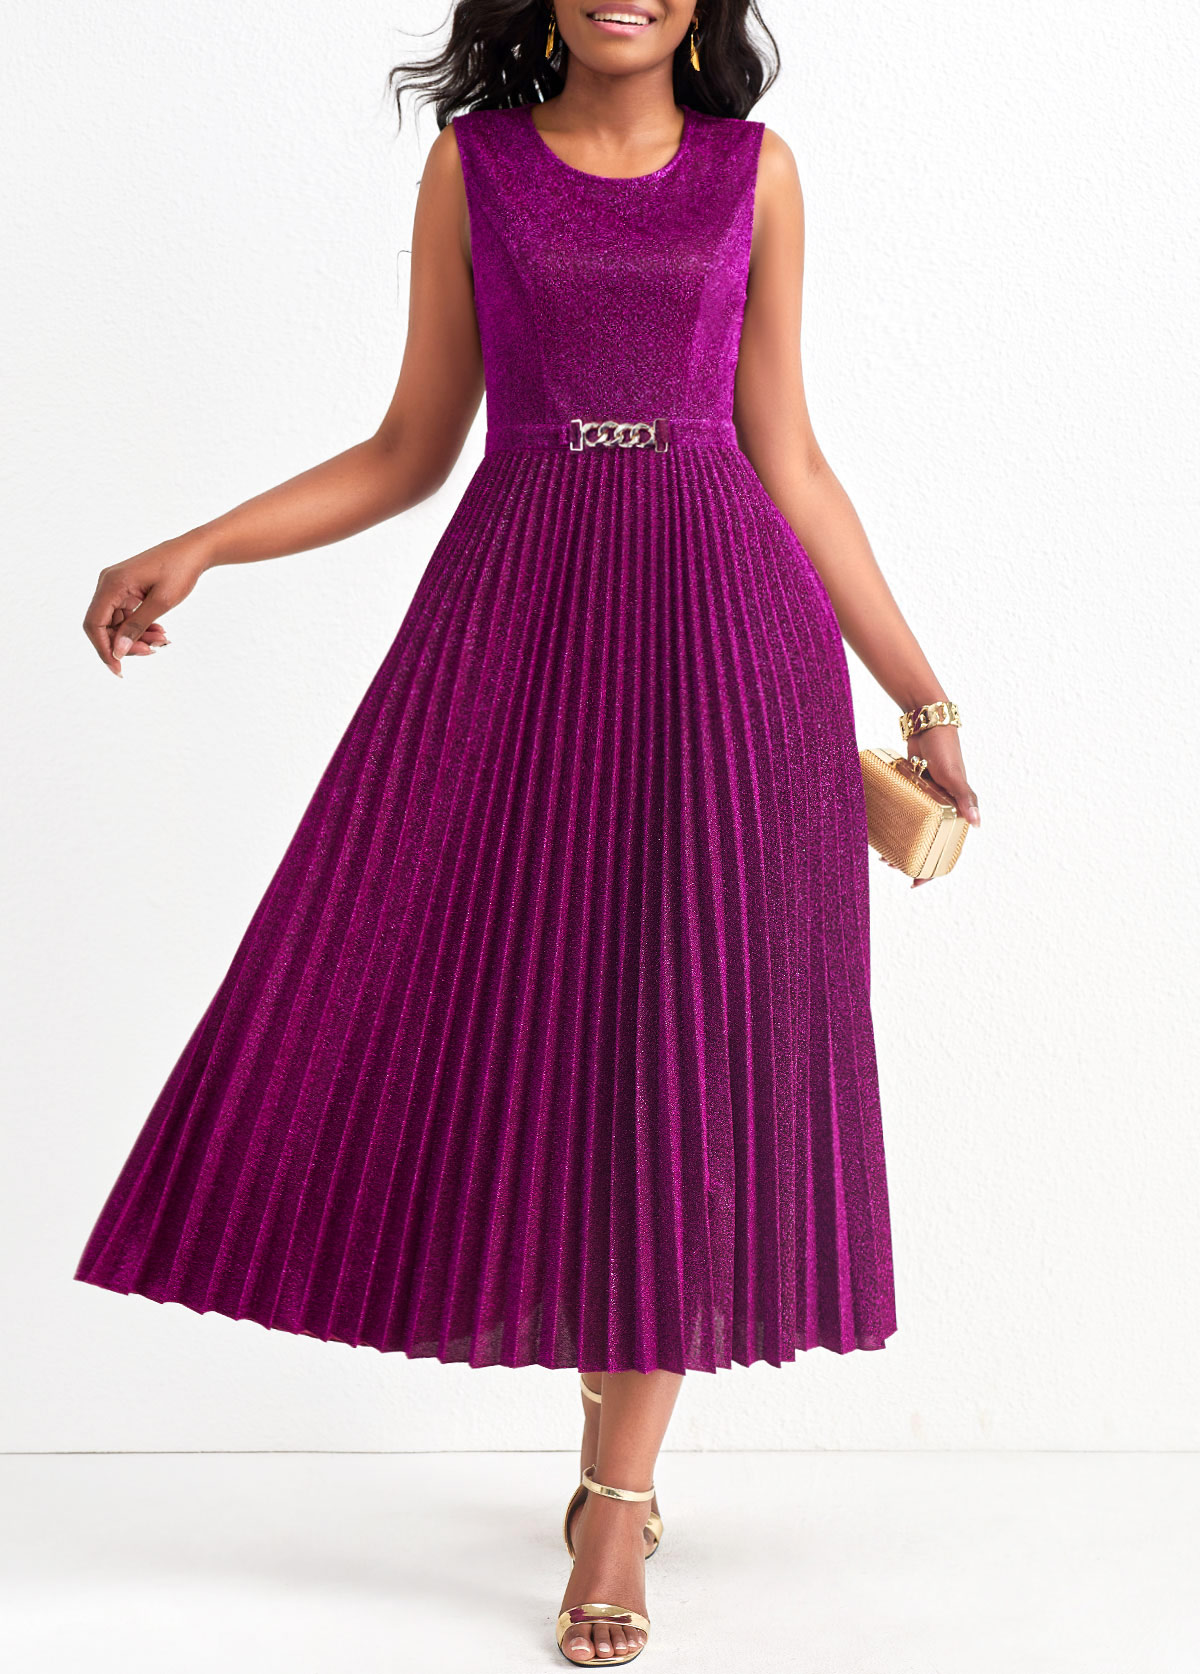 Pleated Dark Reddish Purple Shinning Round Neck Sleeveless Dress